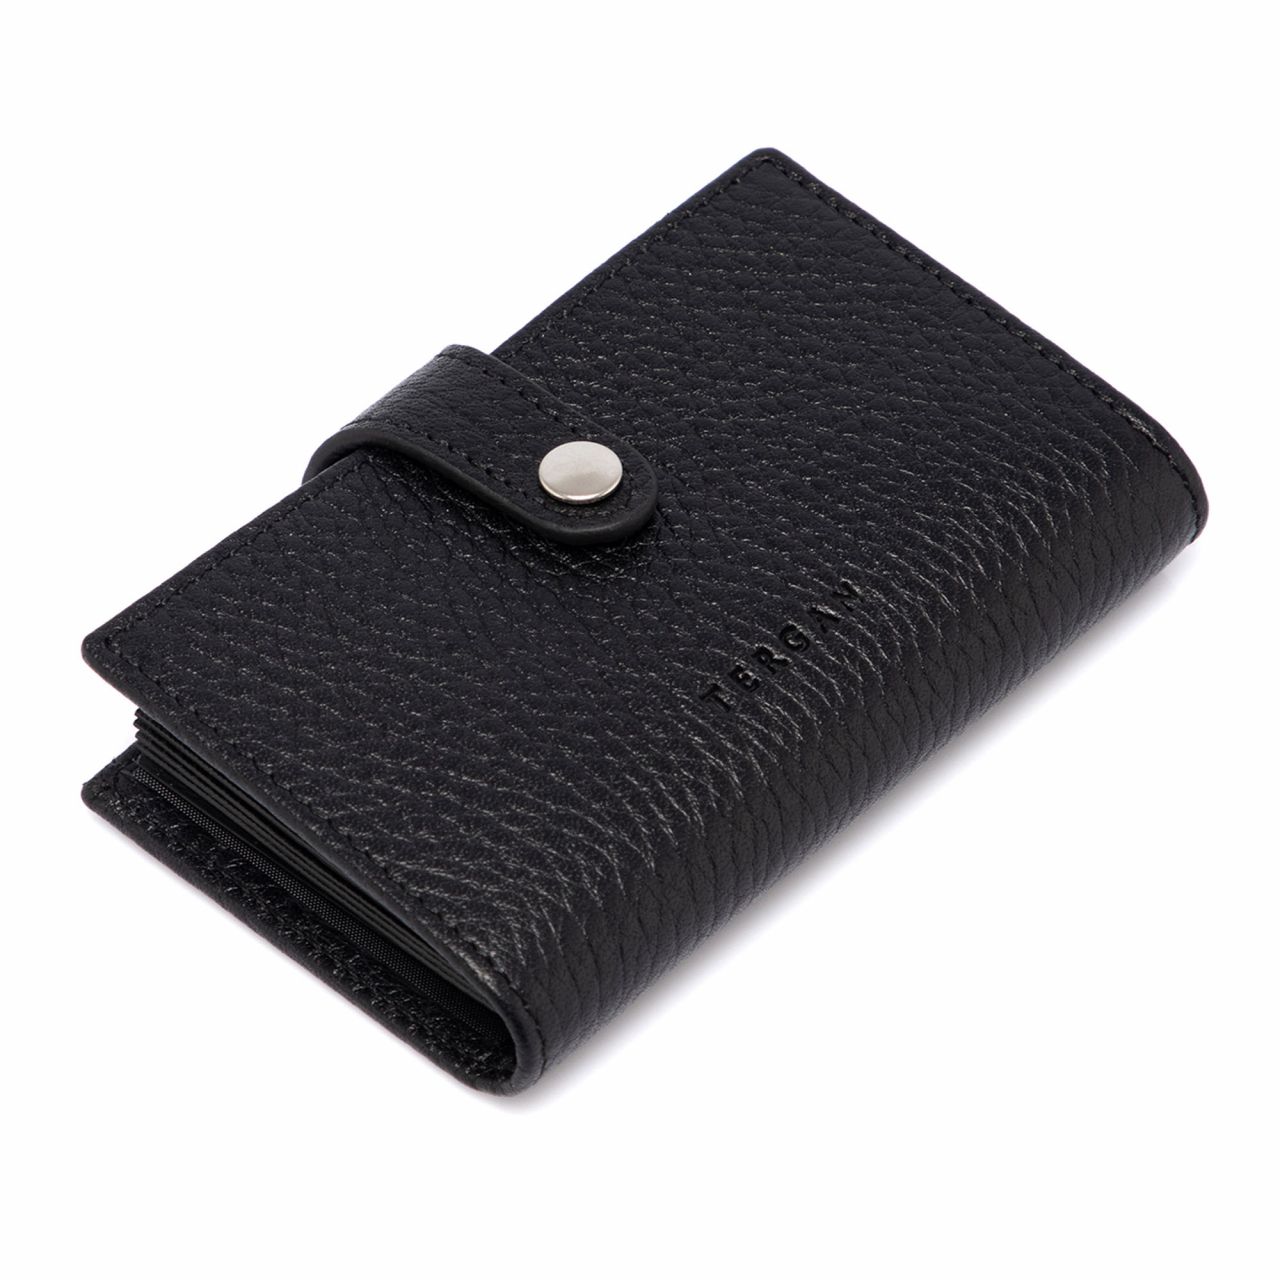 Genuine Leather Credit Card Case Holder